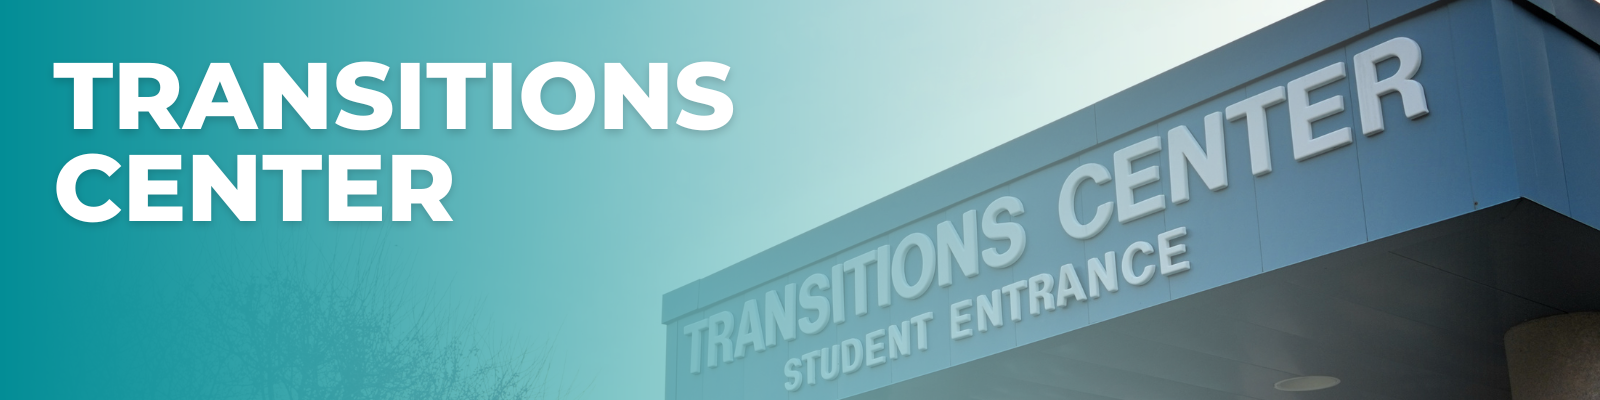 transitions center header